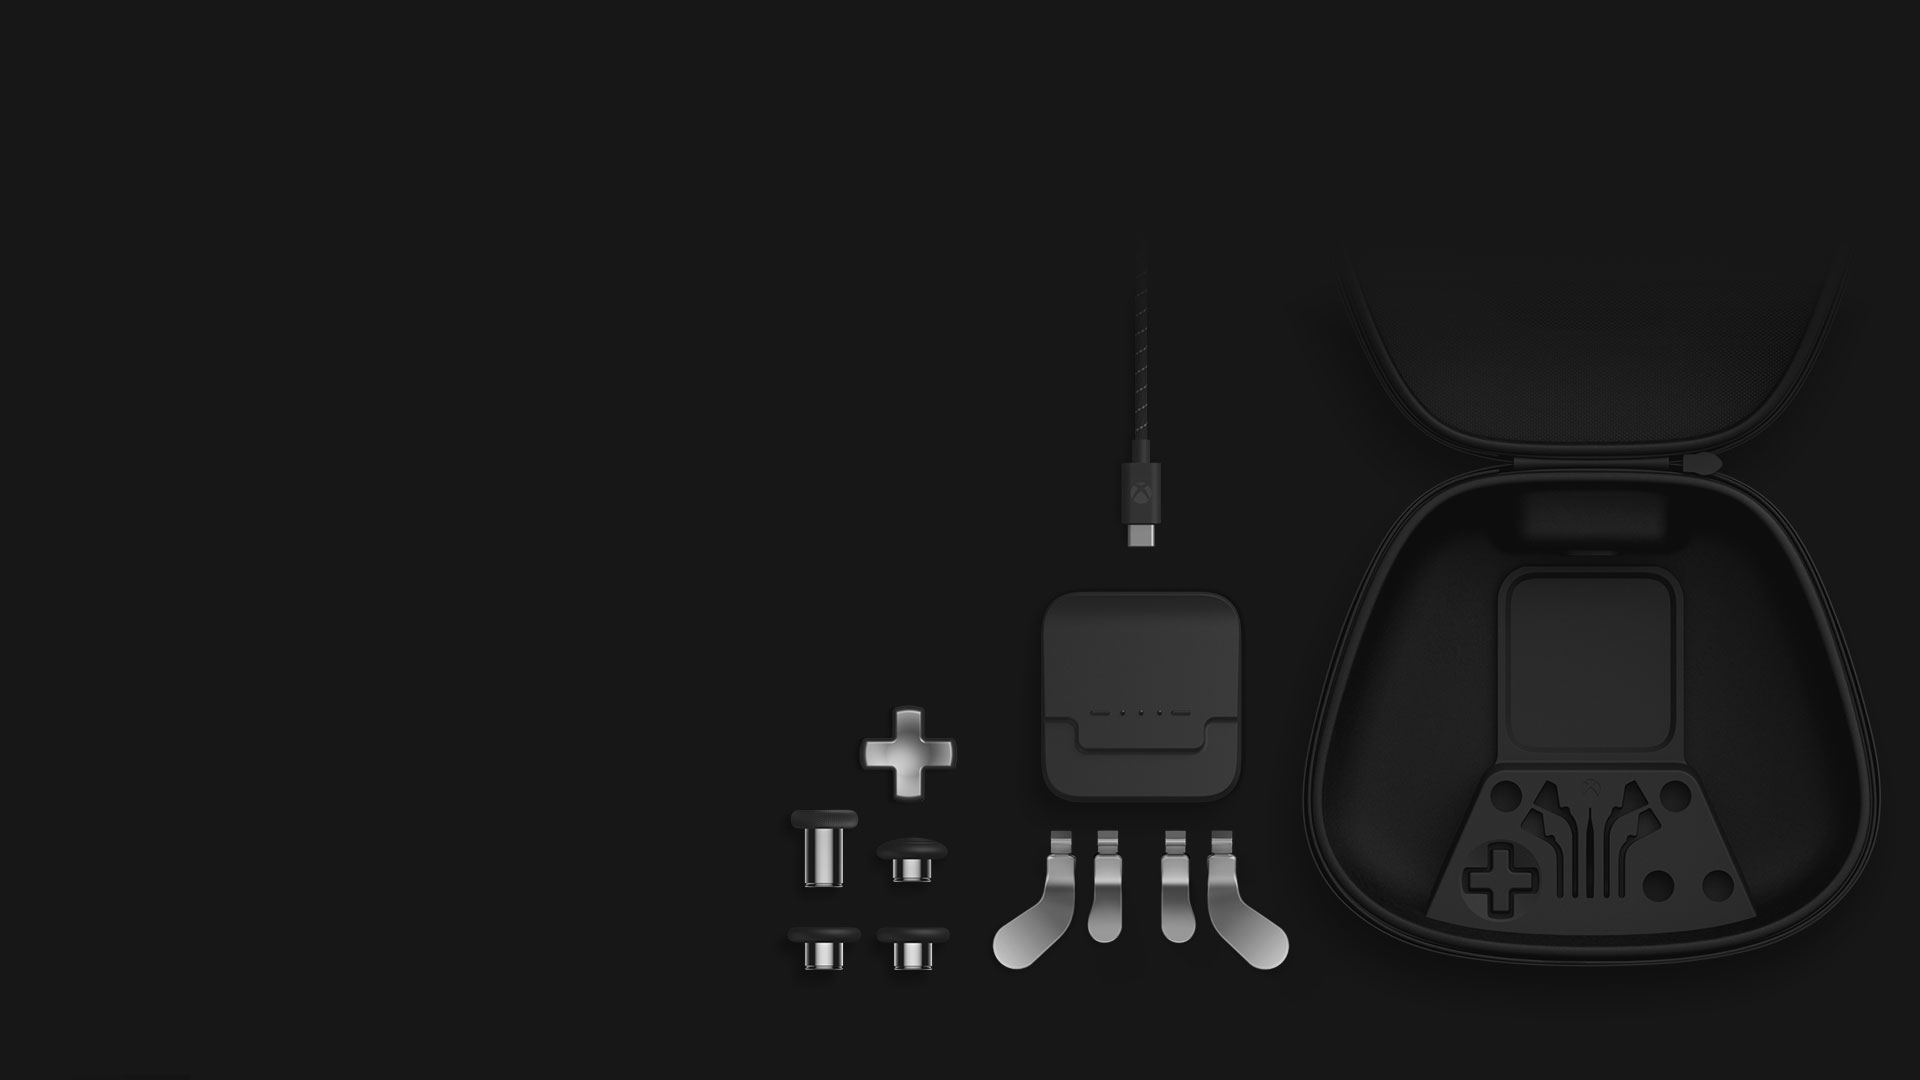 Vue isométrique du contenu de l’ensemble de pièces complet : joysticks, BMD, palettes, station de chargement, câble USB-C et étui de rangement.